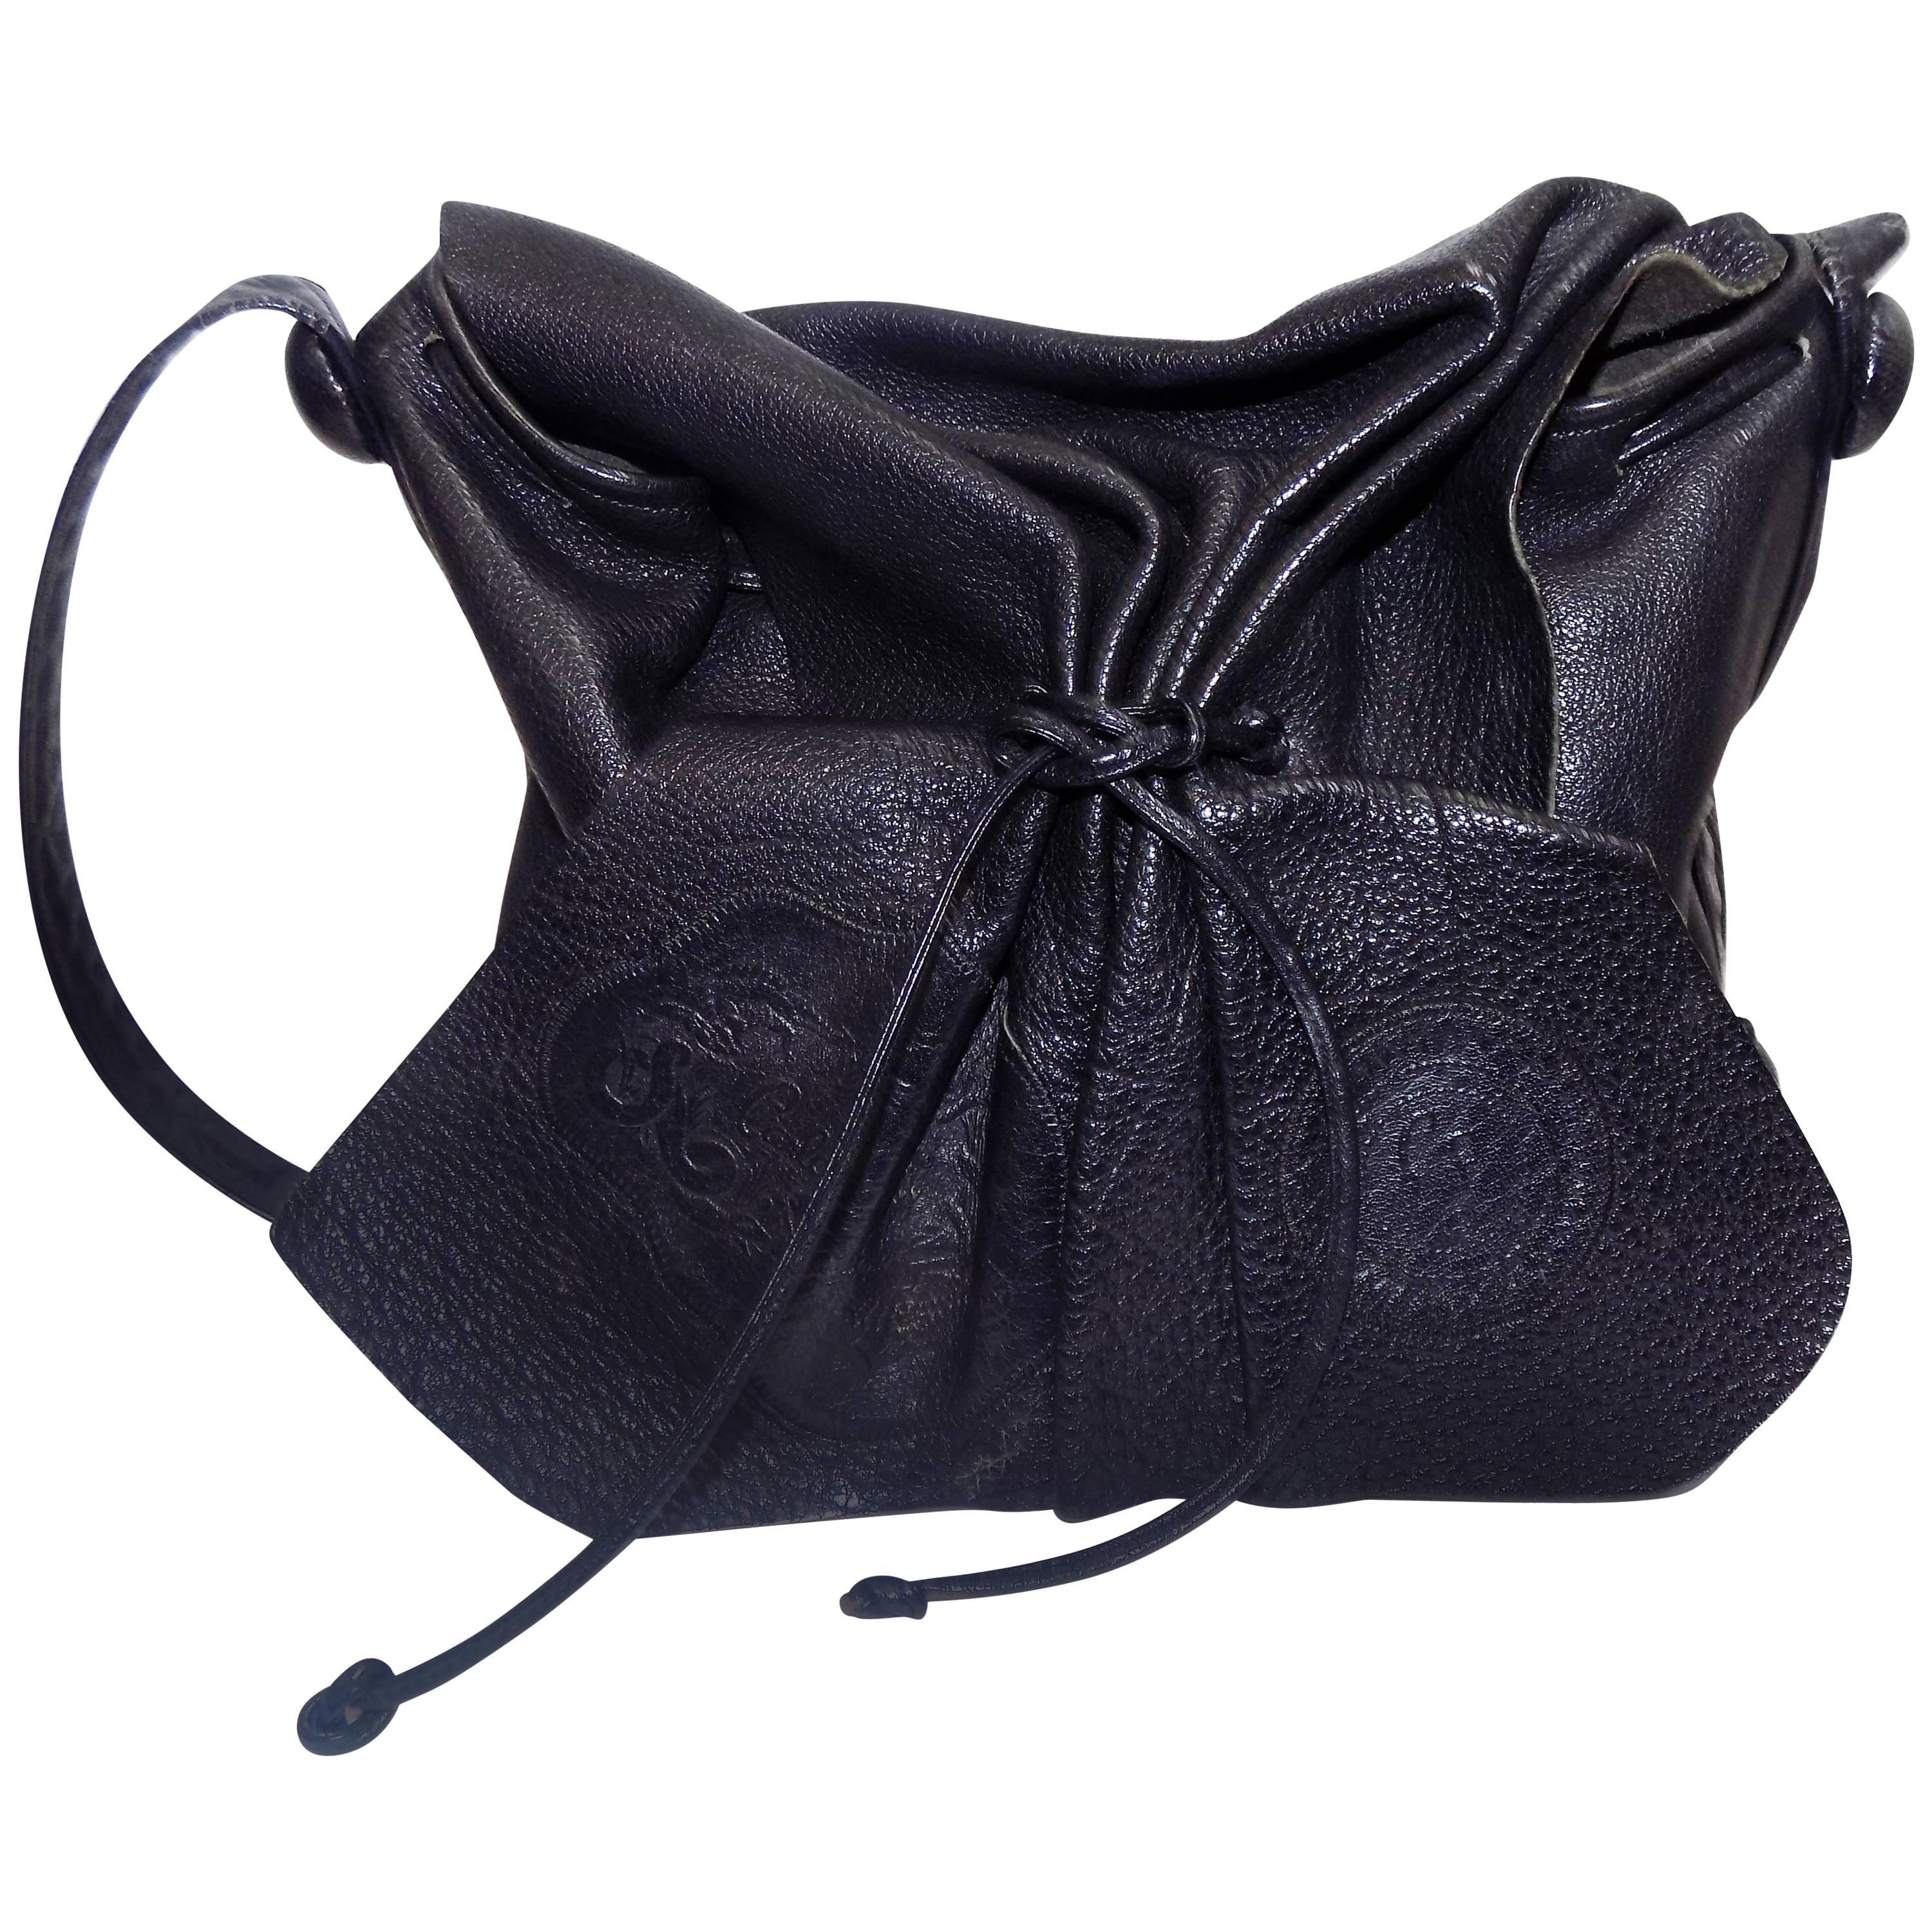 Carlos Falchi's signature black cross-body drawstring large bag